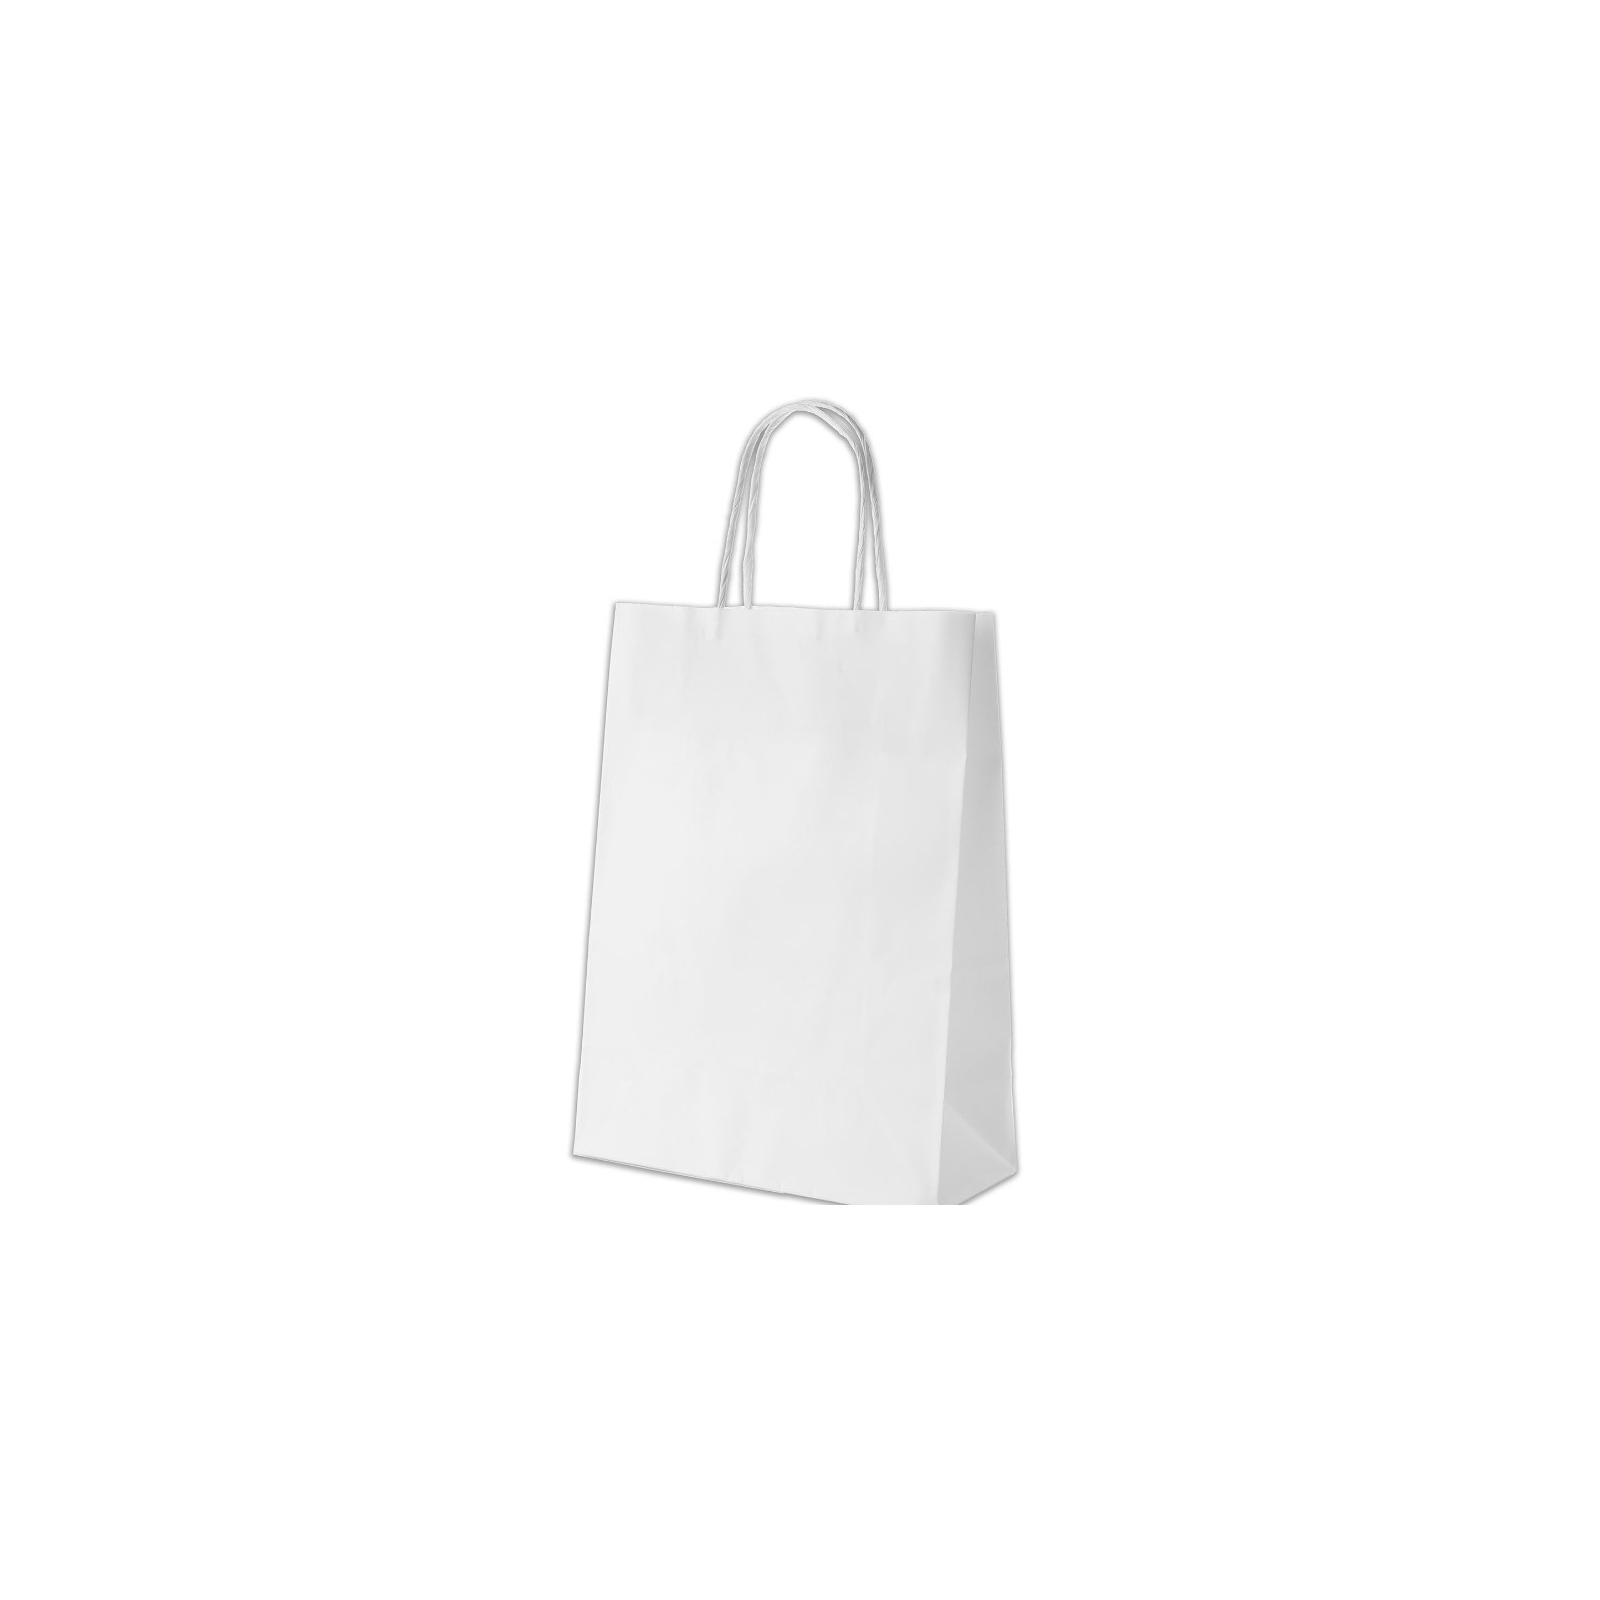 Подарочный пакет Куверт 100 Ecobag бумажный, 24х10х32 см белый (BAG-KUV-240100360-WH)